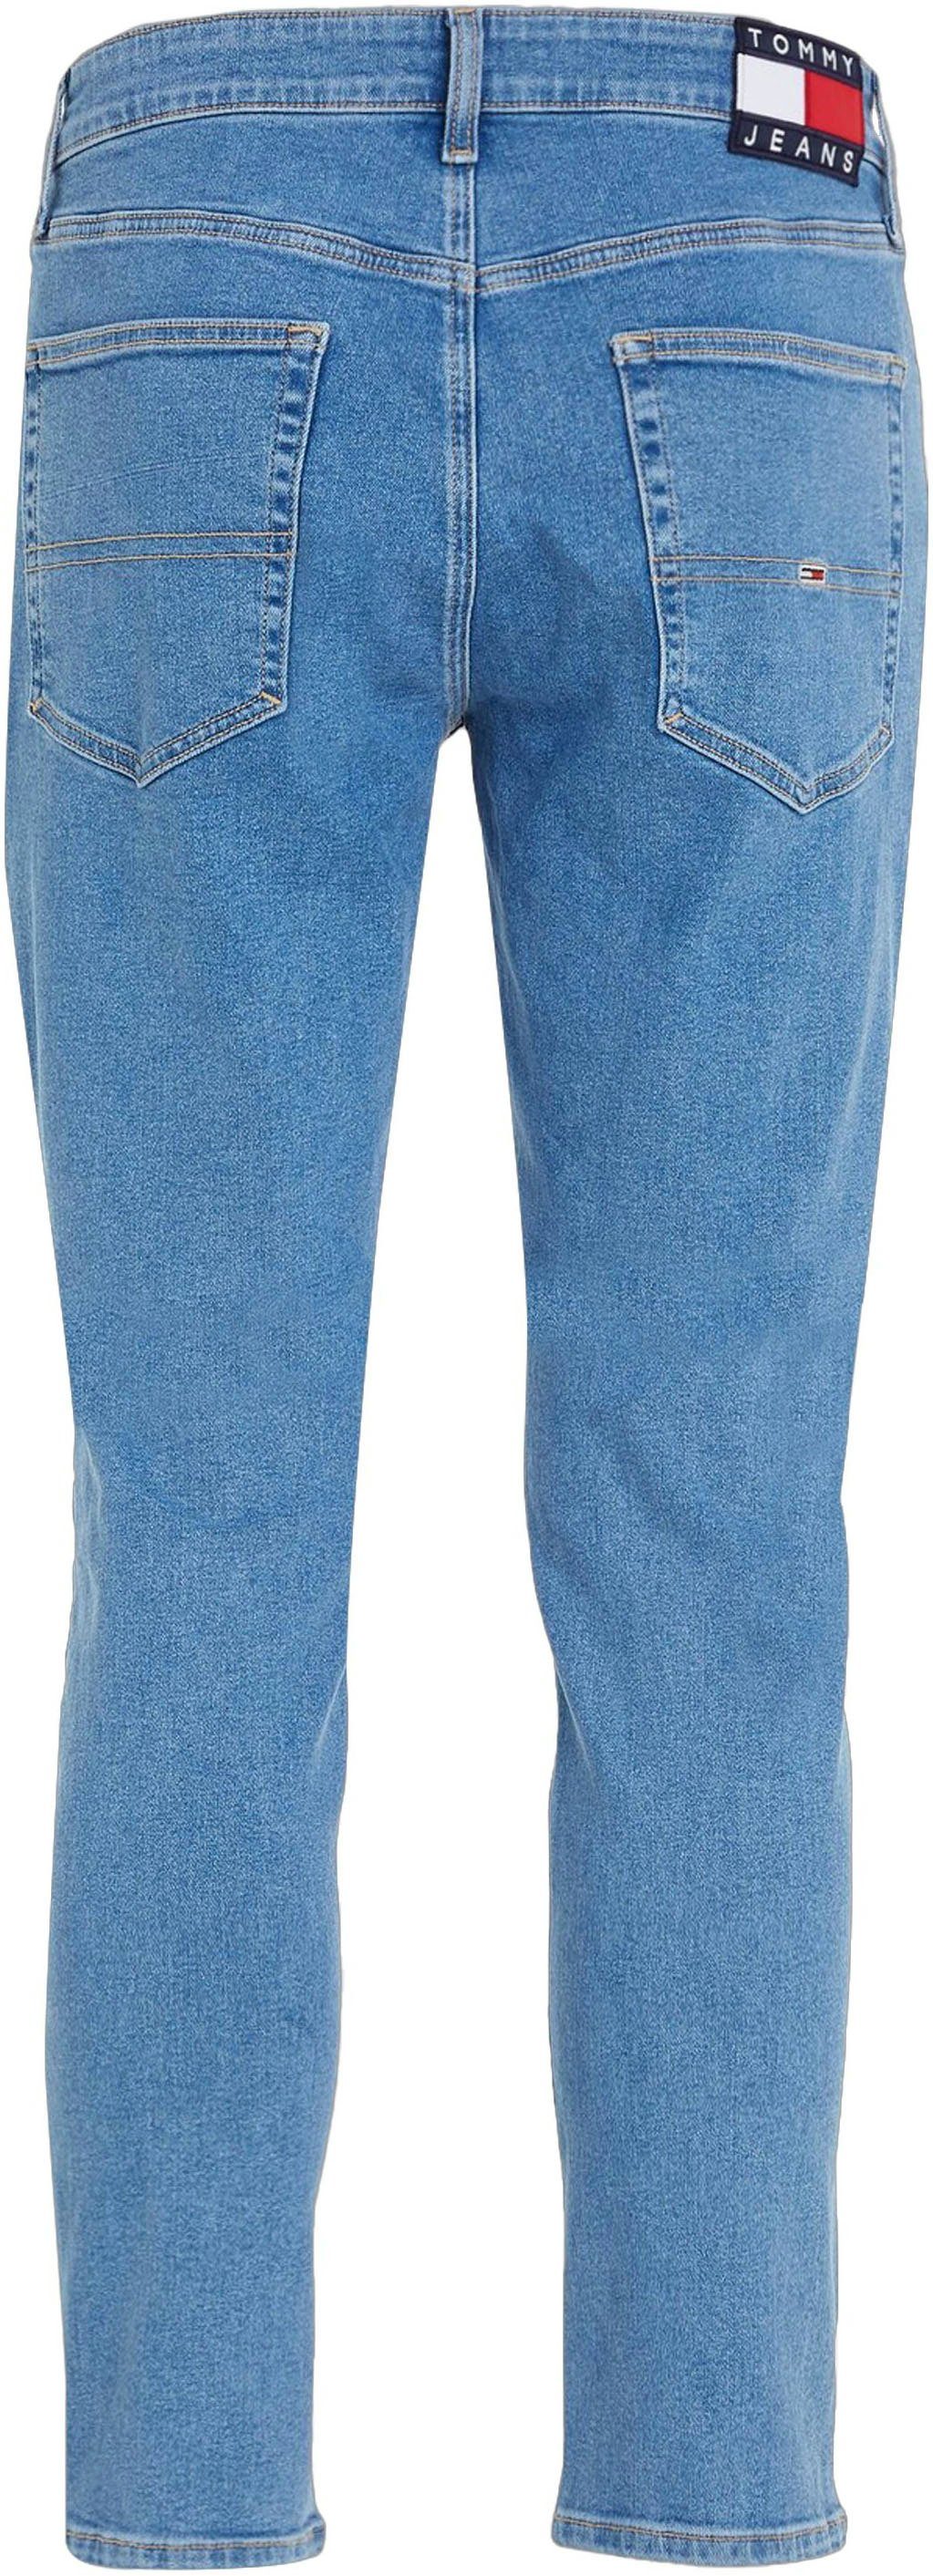 SLIM Jeans Tommy blue TPRD mit AUSTIN Slim-fit-Jeans Lederbadge